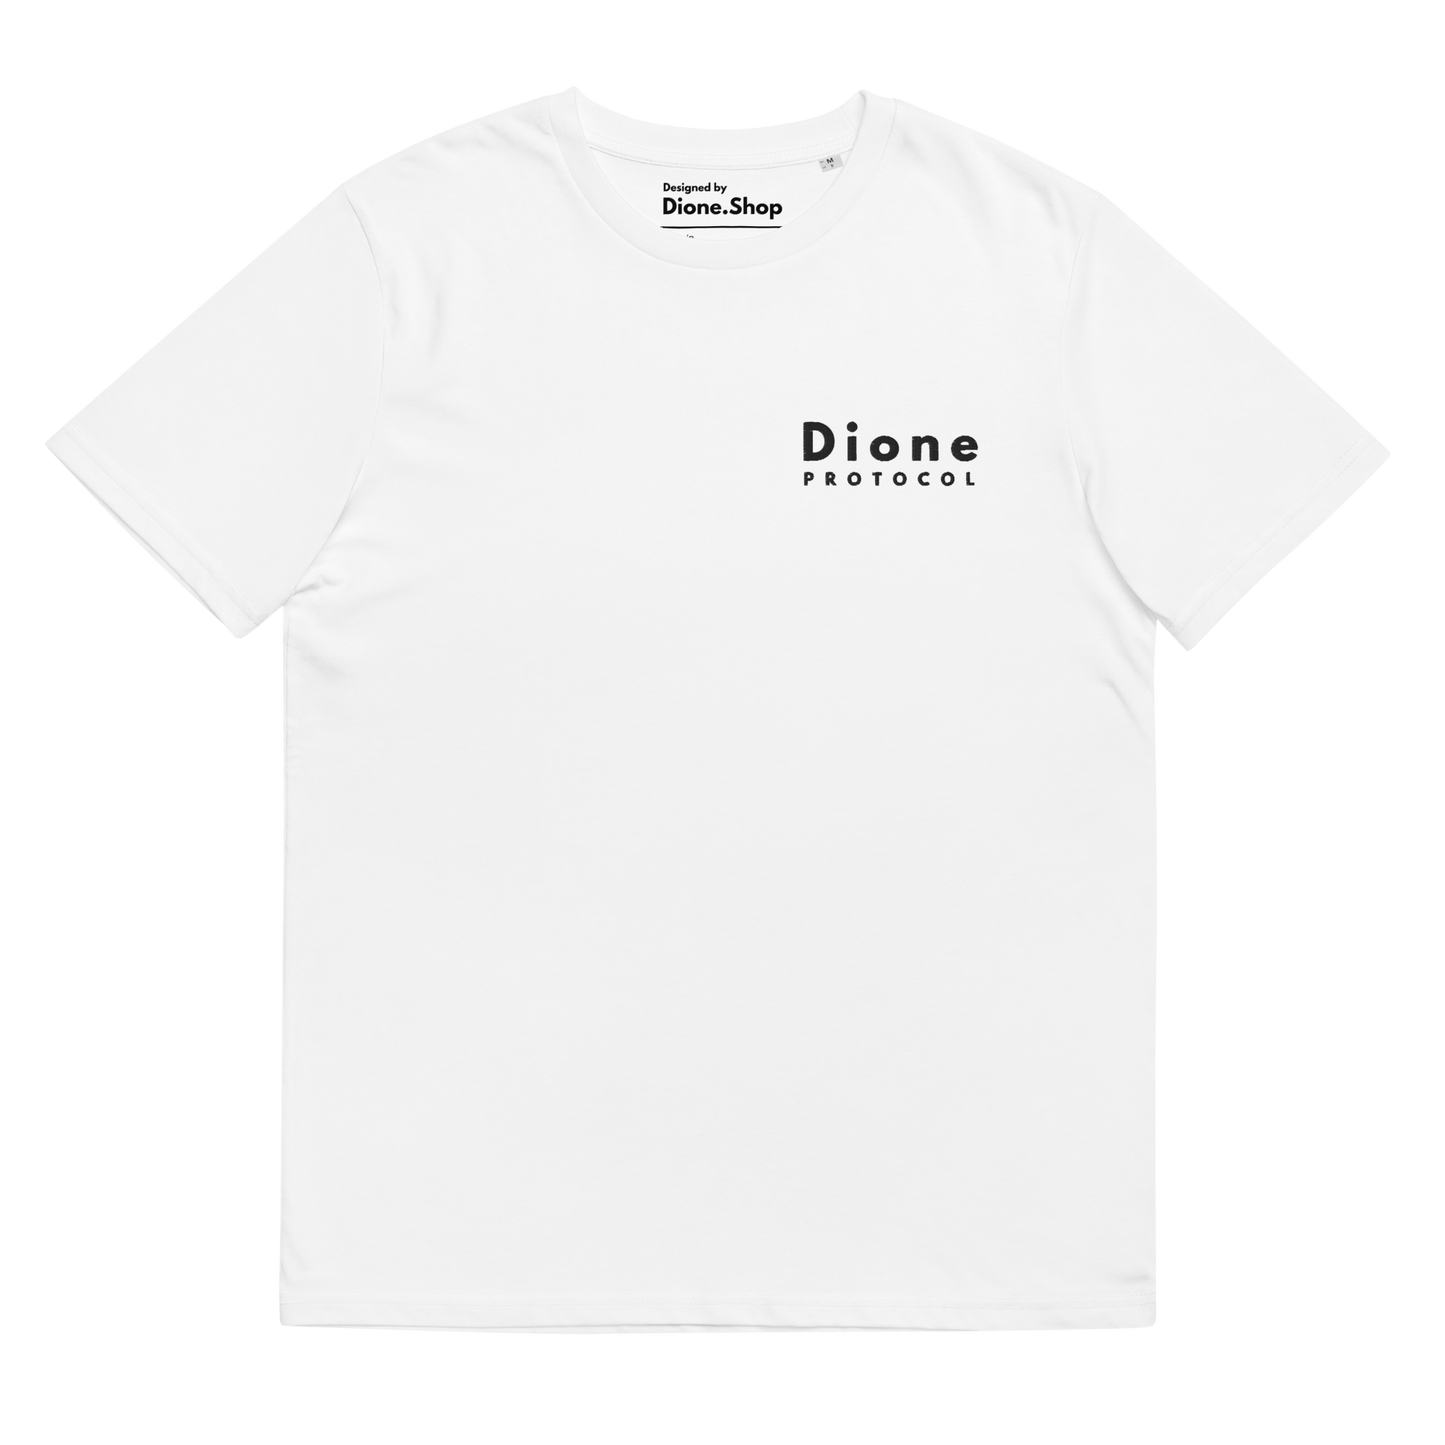 T-Shirt - Discreet V1.0 - White - Premium